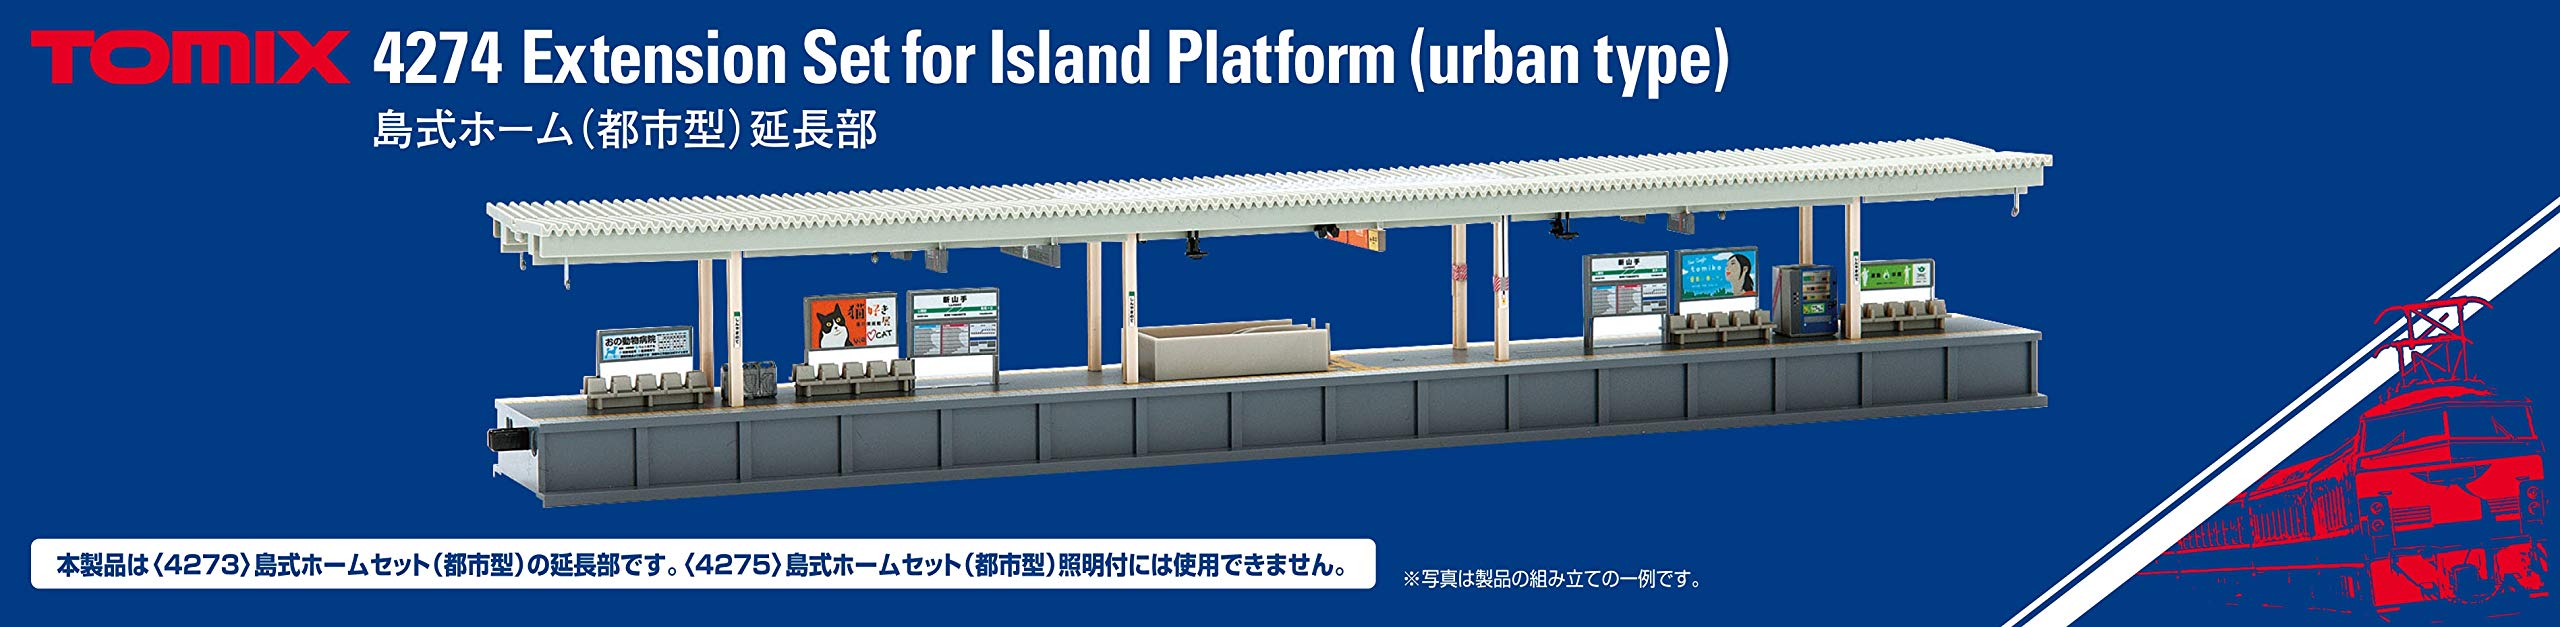 Tomytec Island Platform Extension urbaine Pièce 4274 pour modèles ferroviaires de jauge N